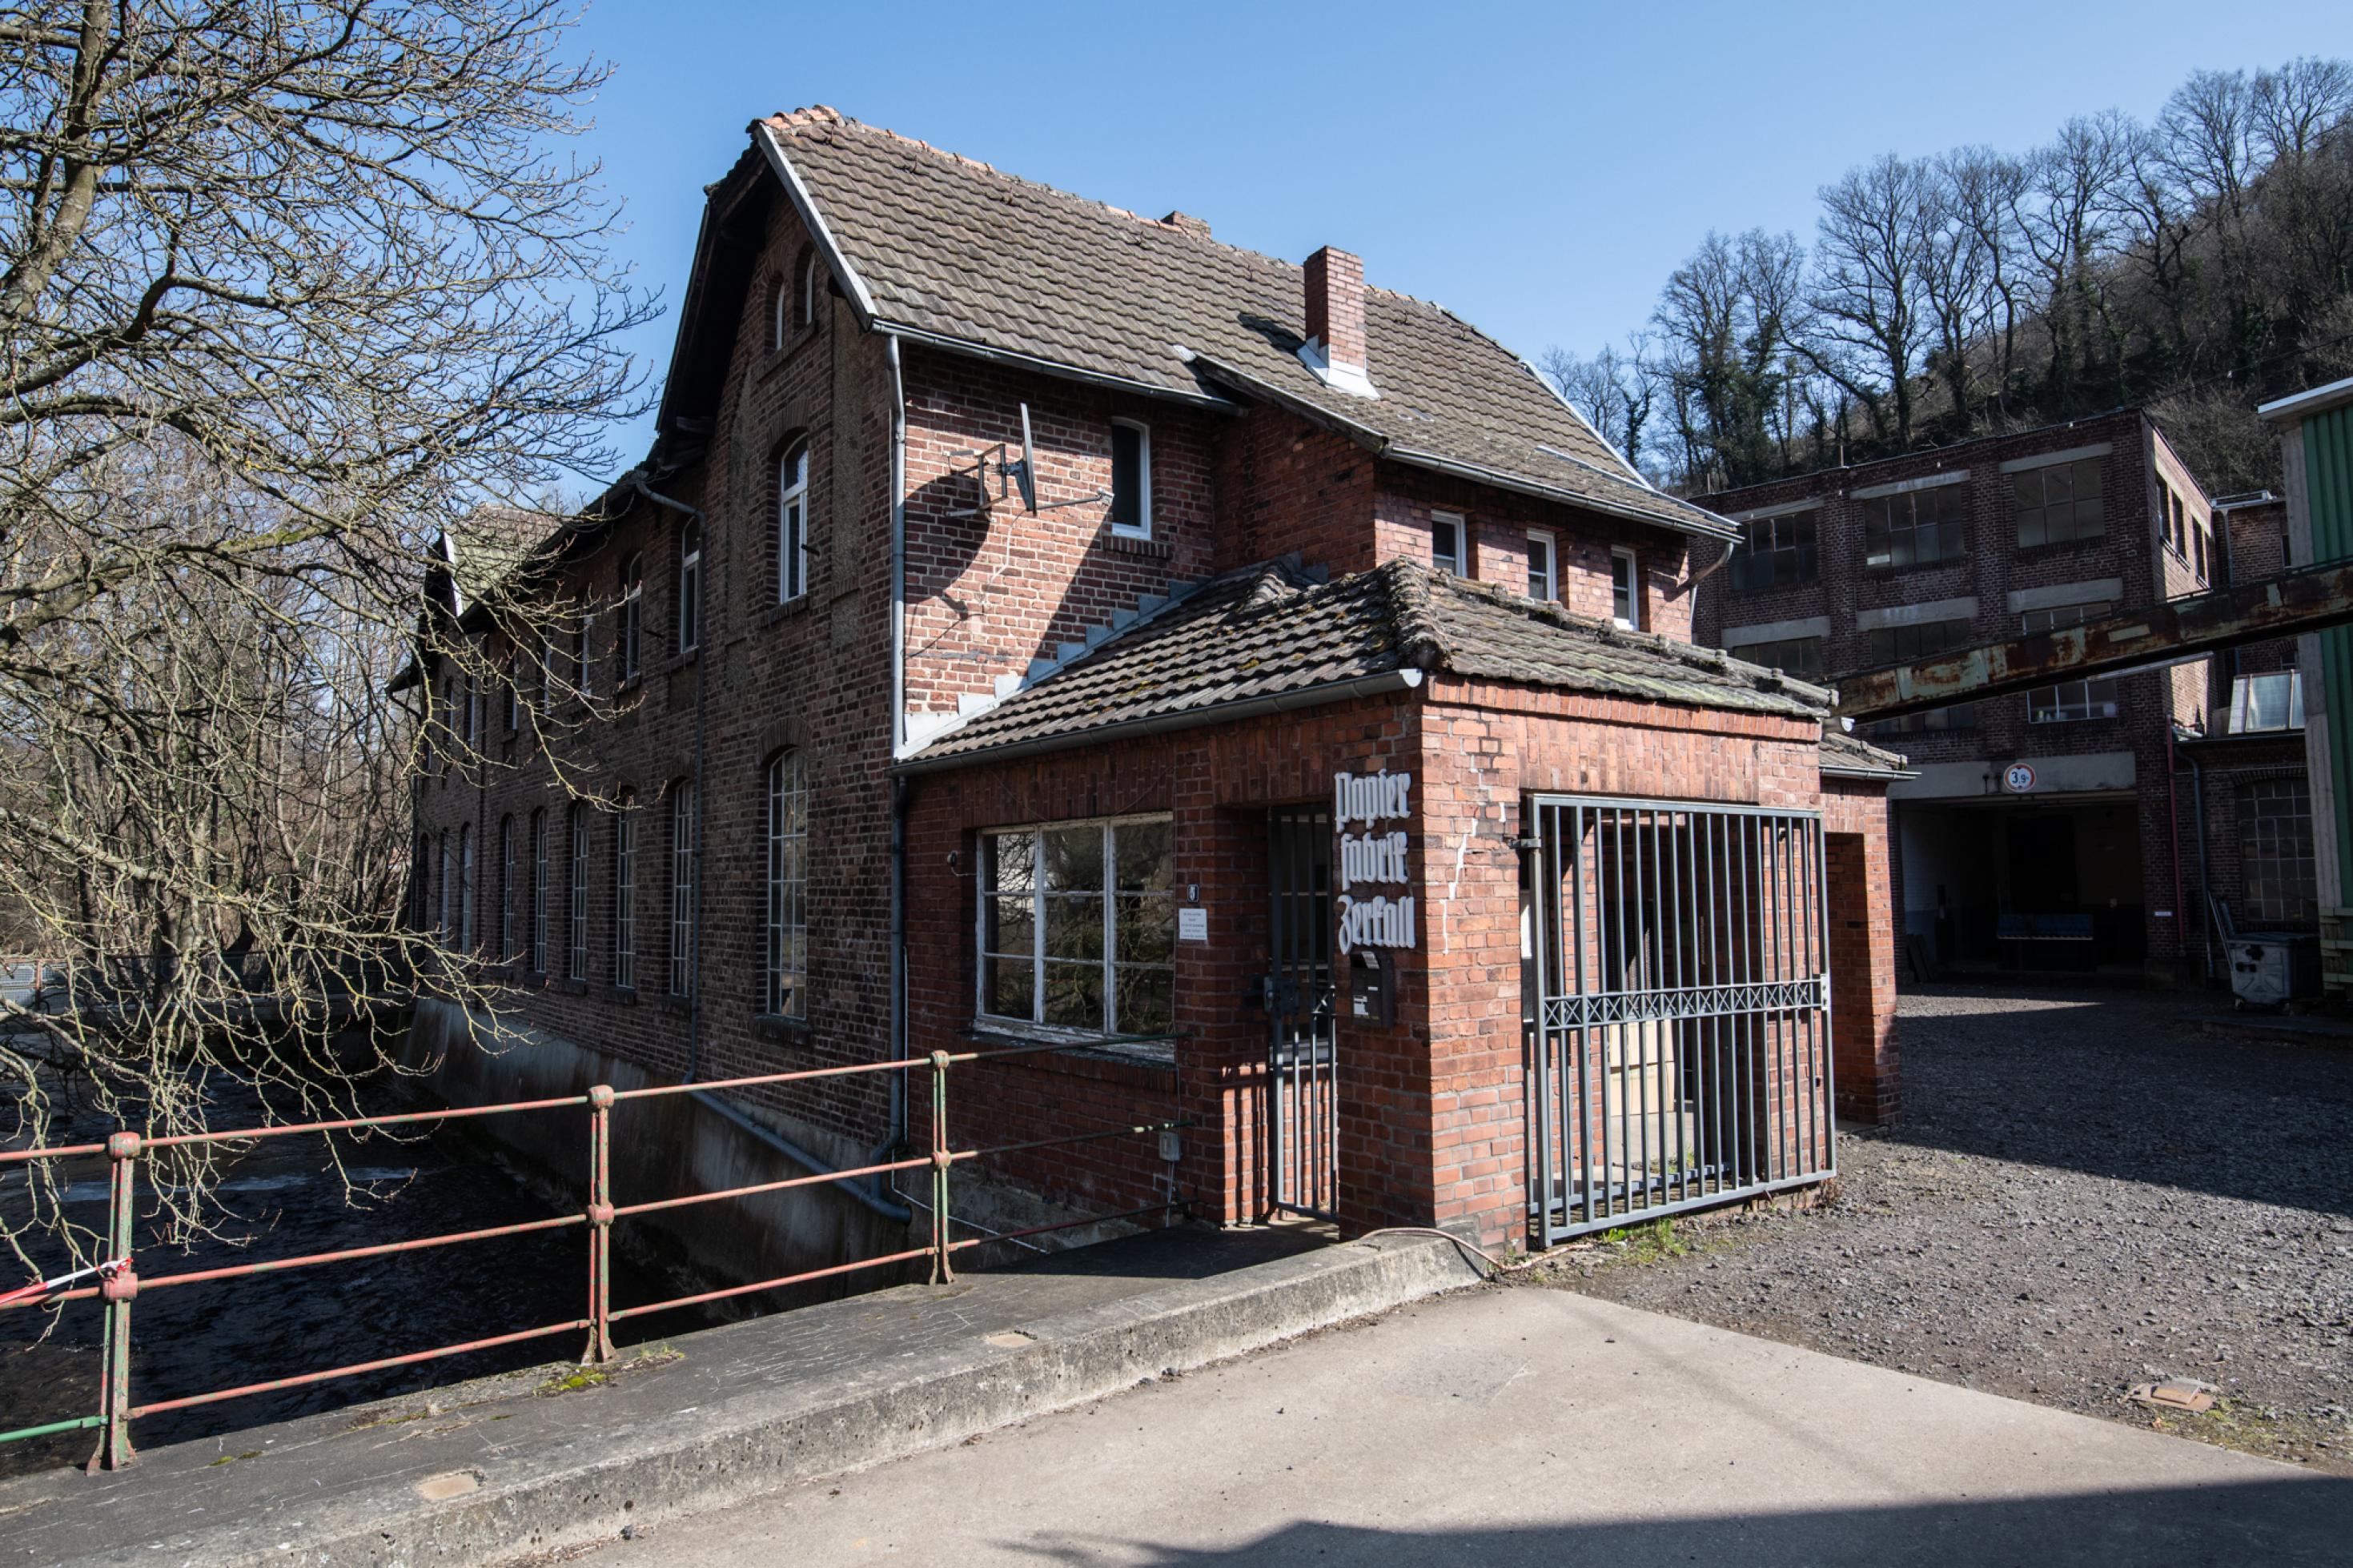 Einfahrt mit Backsteingebäude, an dessen Front in alter Schrift „Papierfabrik Zerkall“ steht.